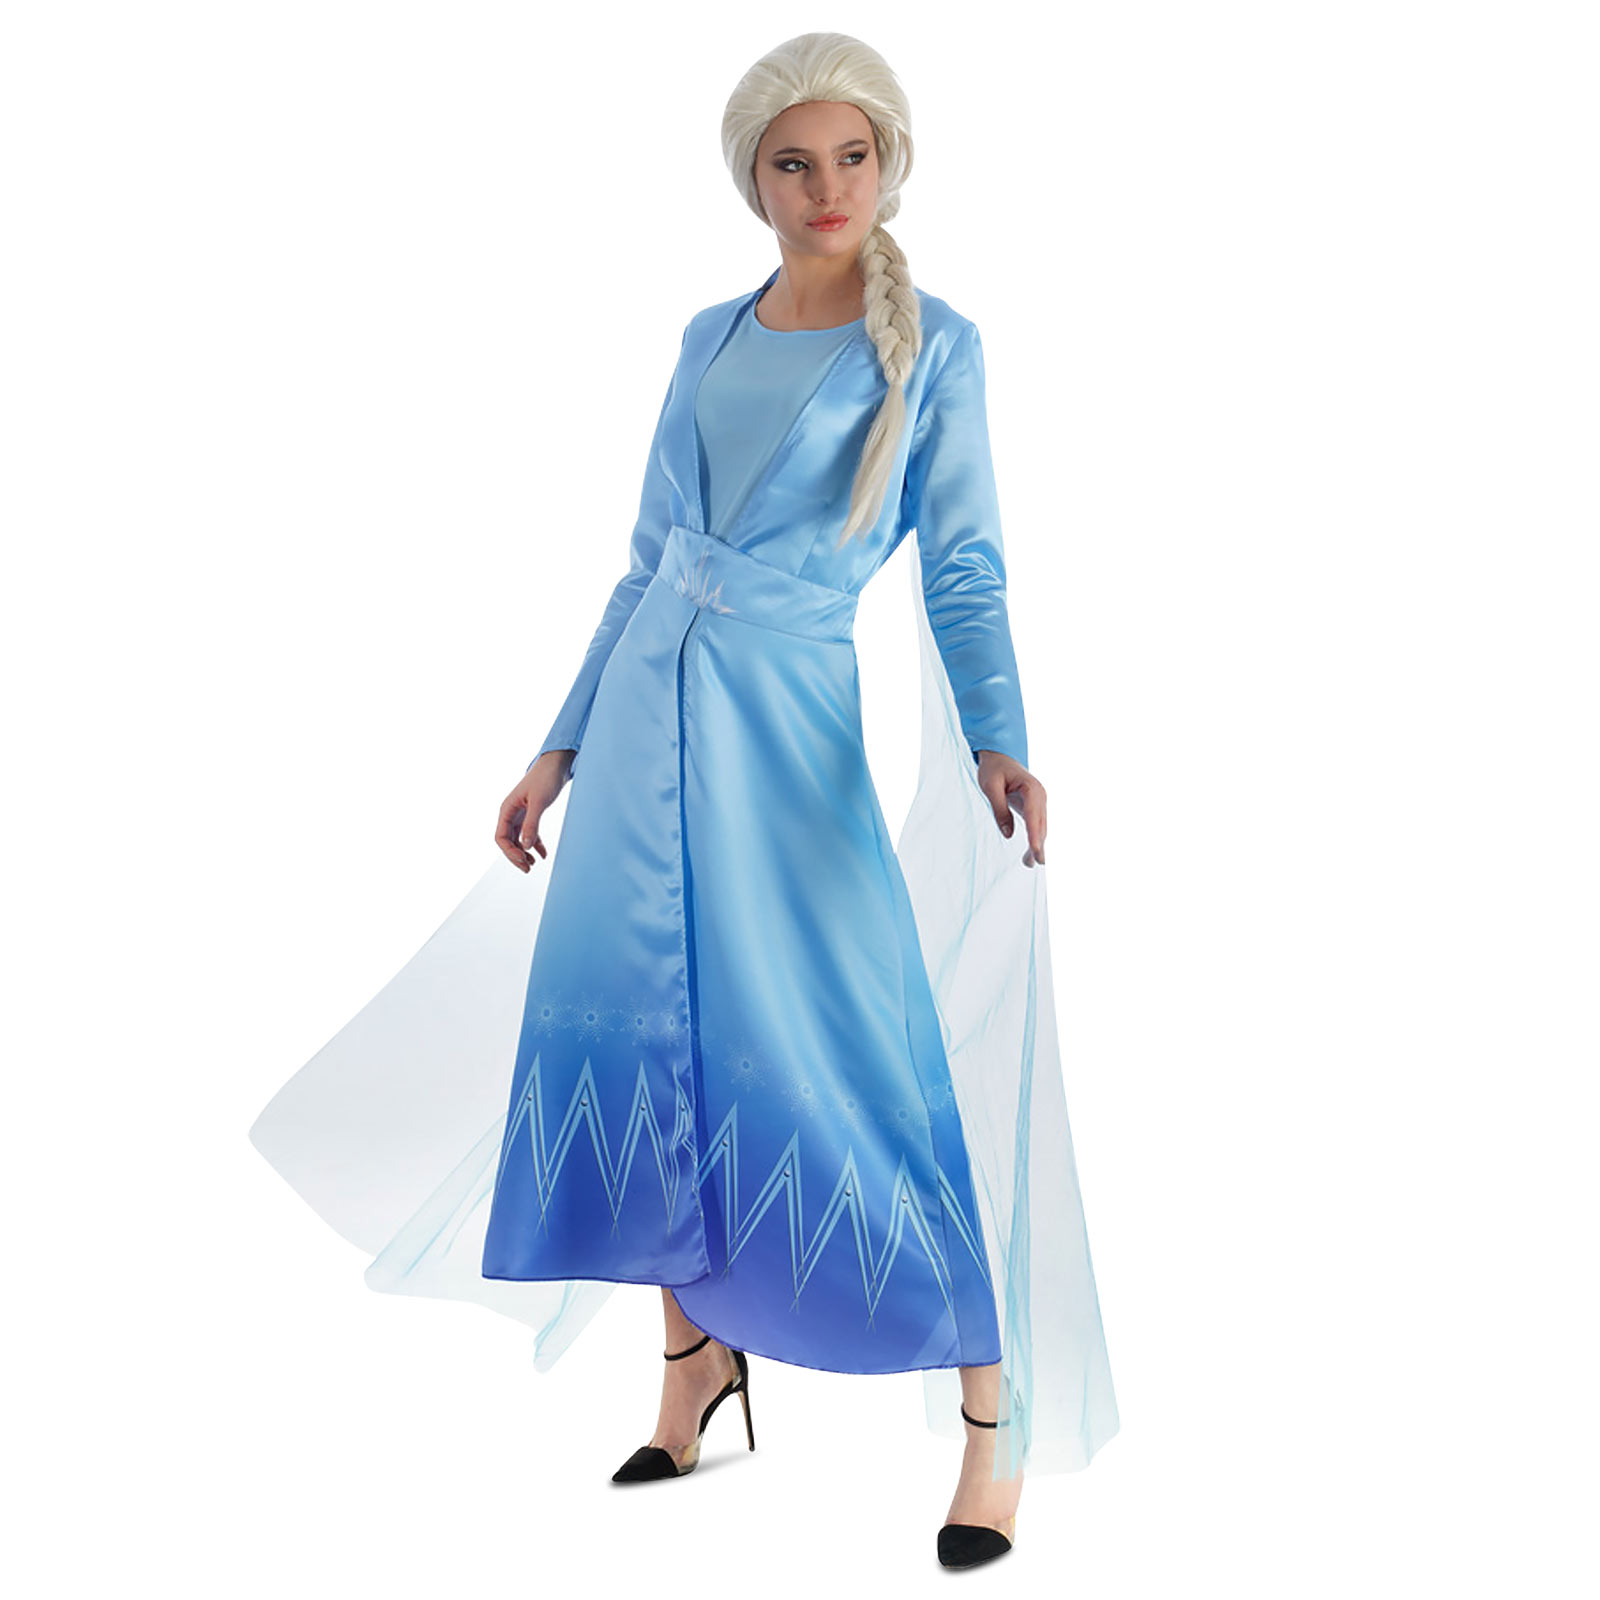 Robe de costume de la Reine des Neiges Elsa pour les fans de Frozen